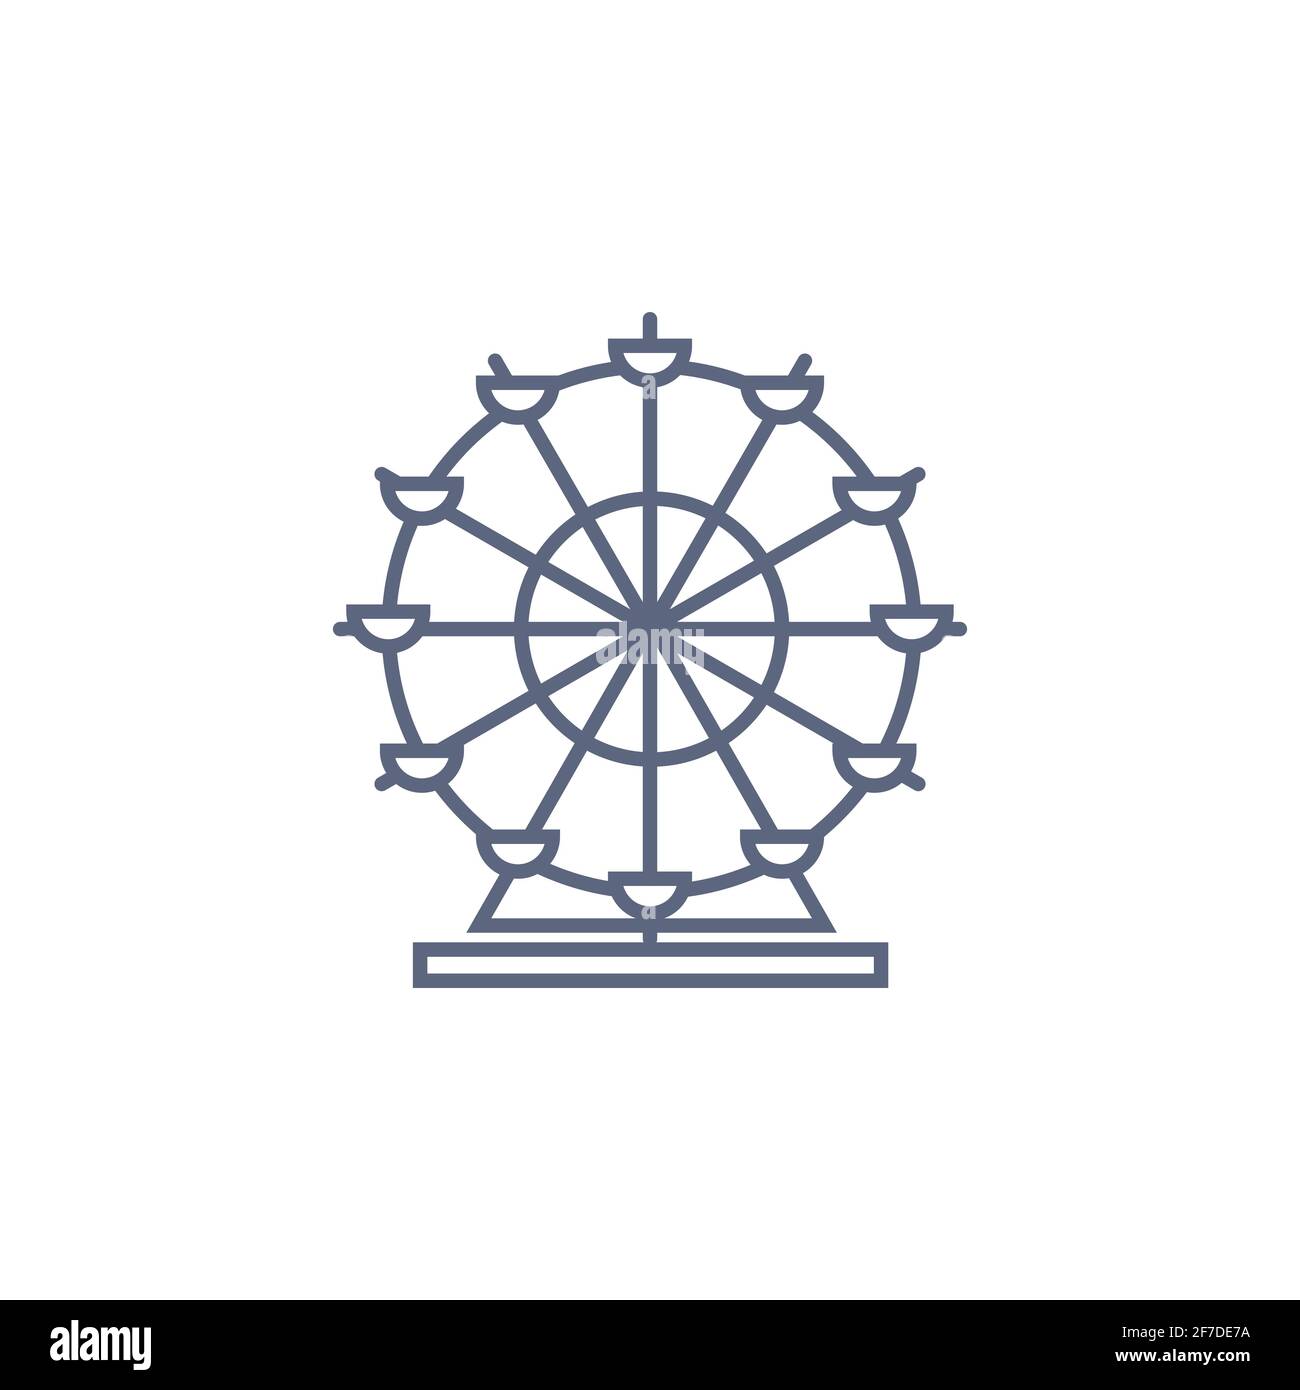 Symbol der Riesenrad-Linie - Karussell einfaches lineares Piktogramm auf weißem Hintergrund. Vektorgrafik Stock Vektor